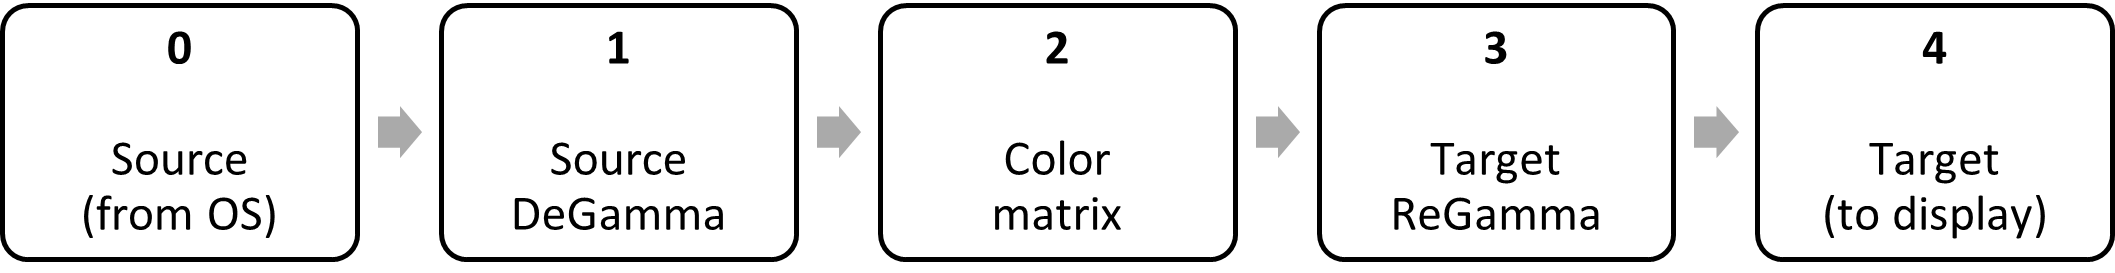 block diagram: source degamma, color matrix, target regamma